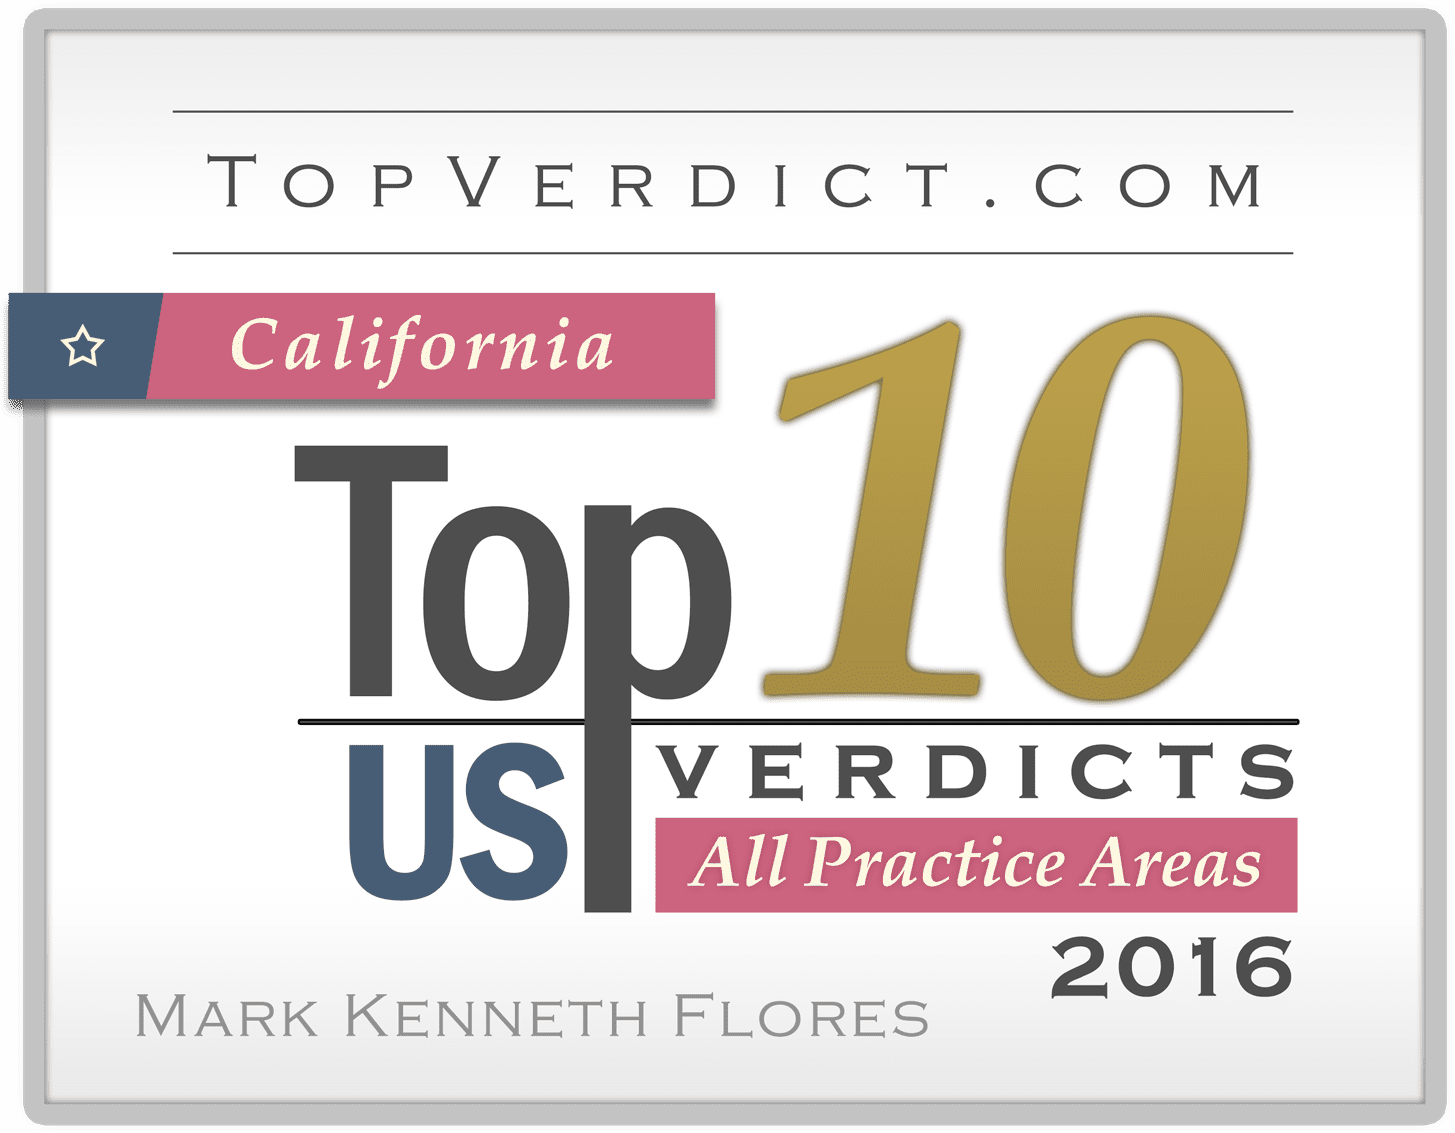 CA Top 10 US Verdicts 2016